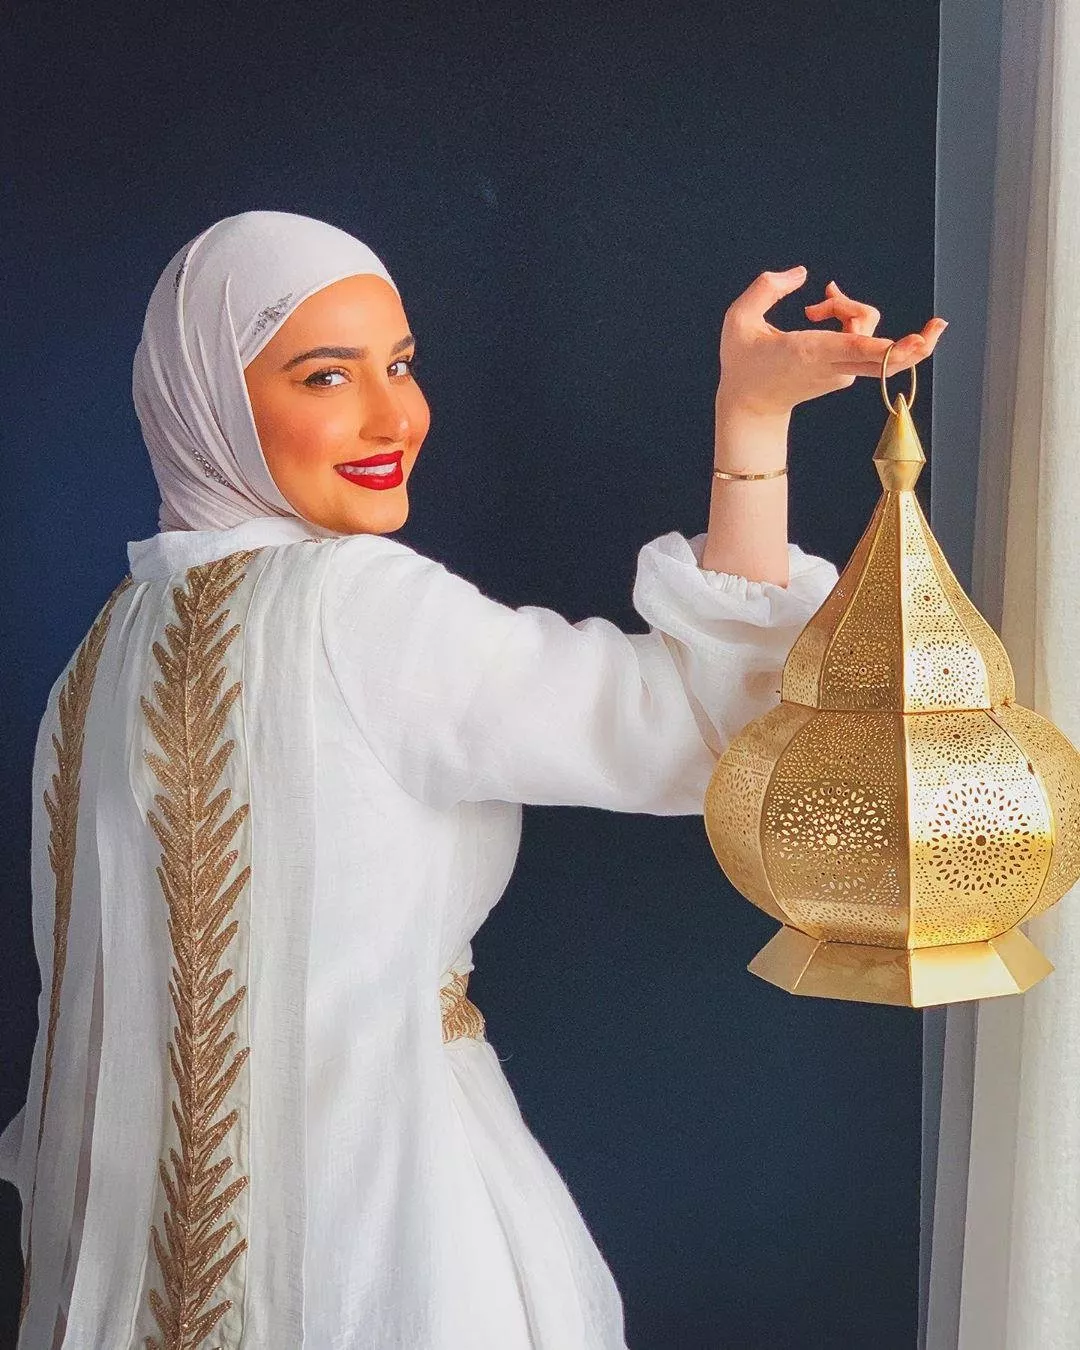 اللون الأبيض هو الأكثر رواجاً للعبايات: اعتمديه في رمضان